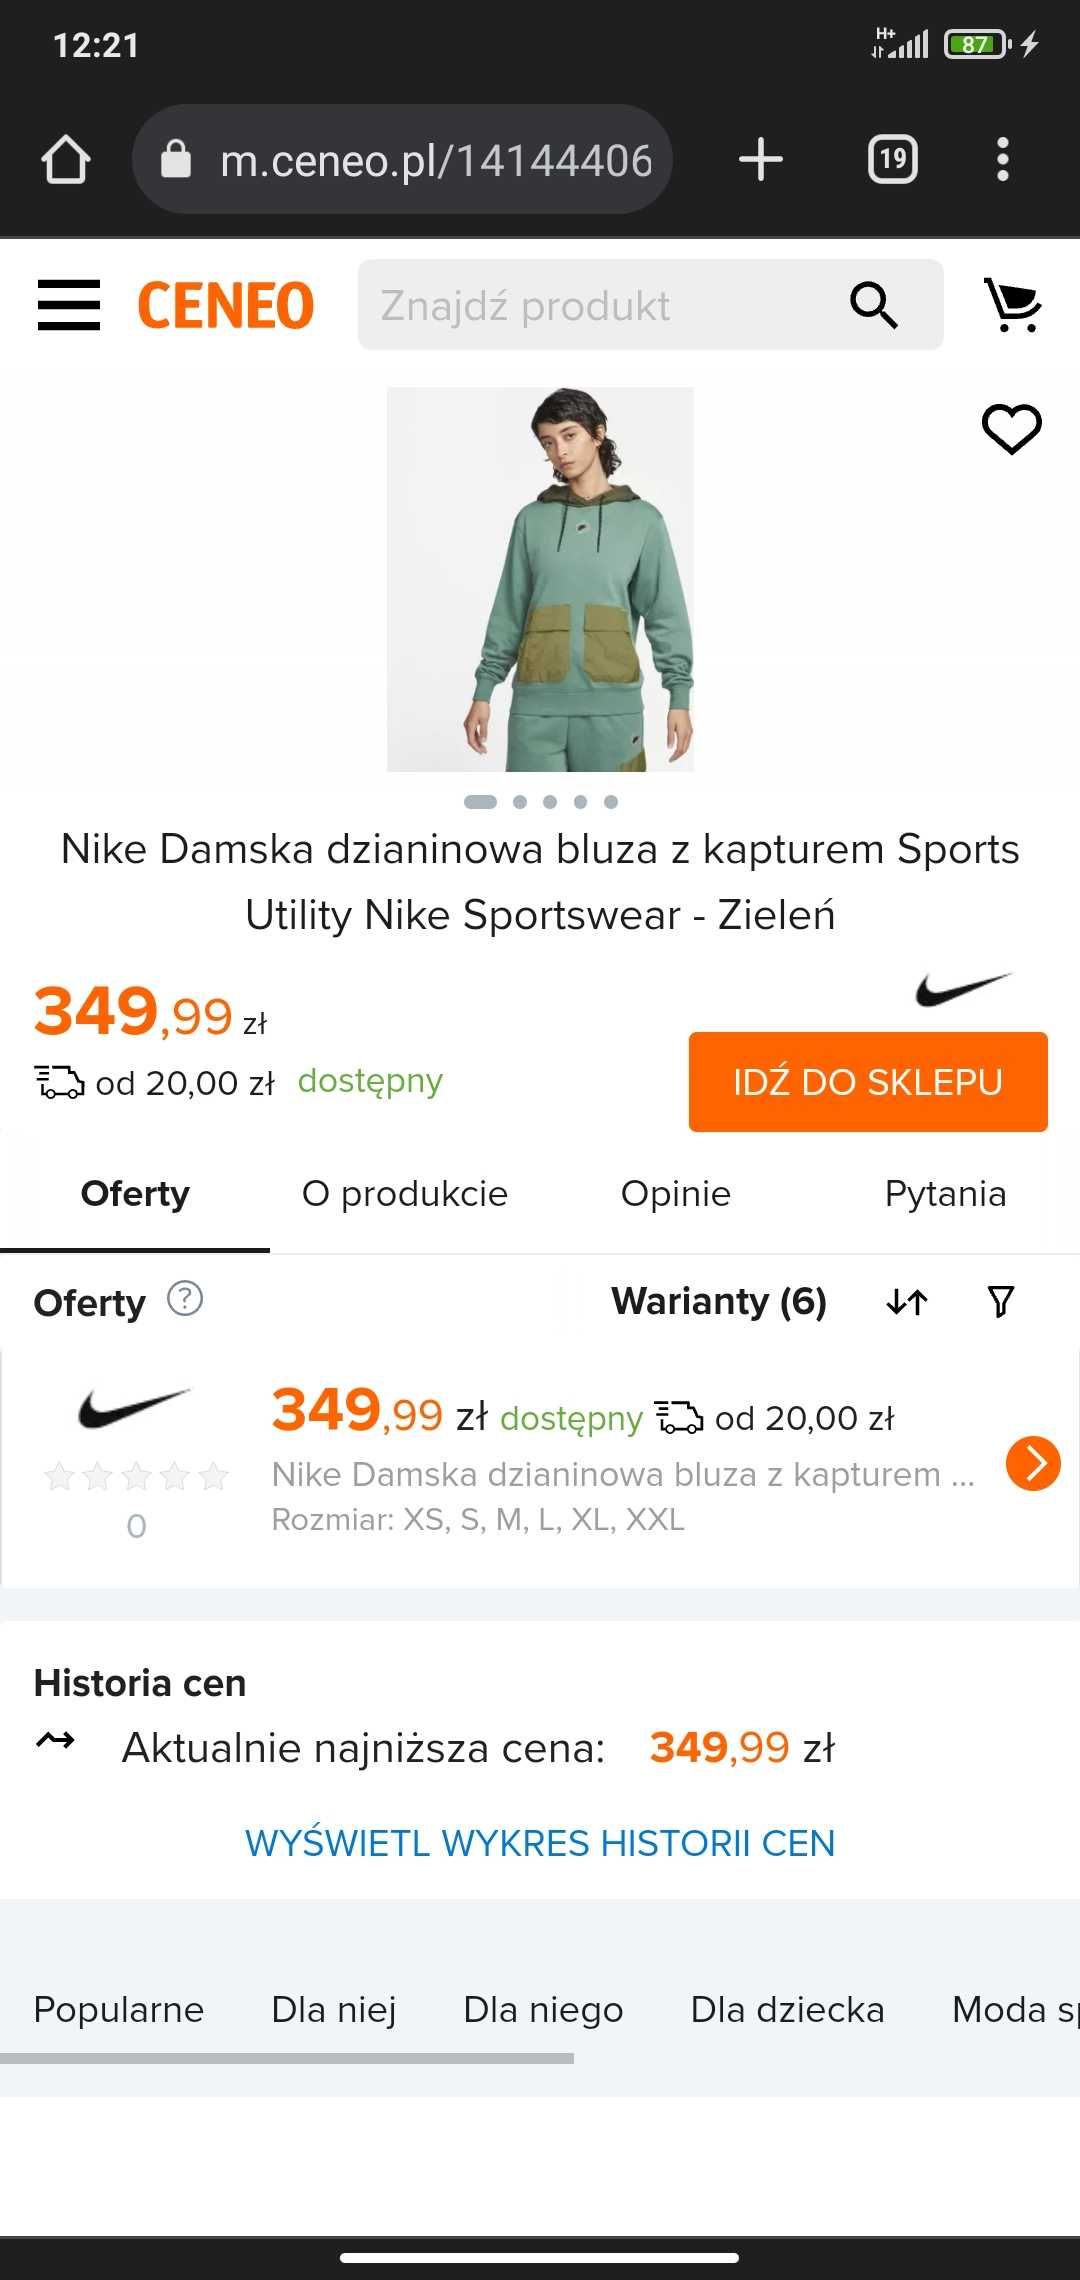 Nike Damska dzianinowa bluza z kapturem Sports Utility Nike Sportswear